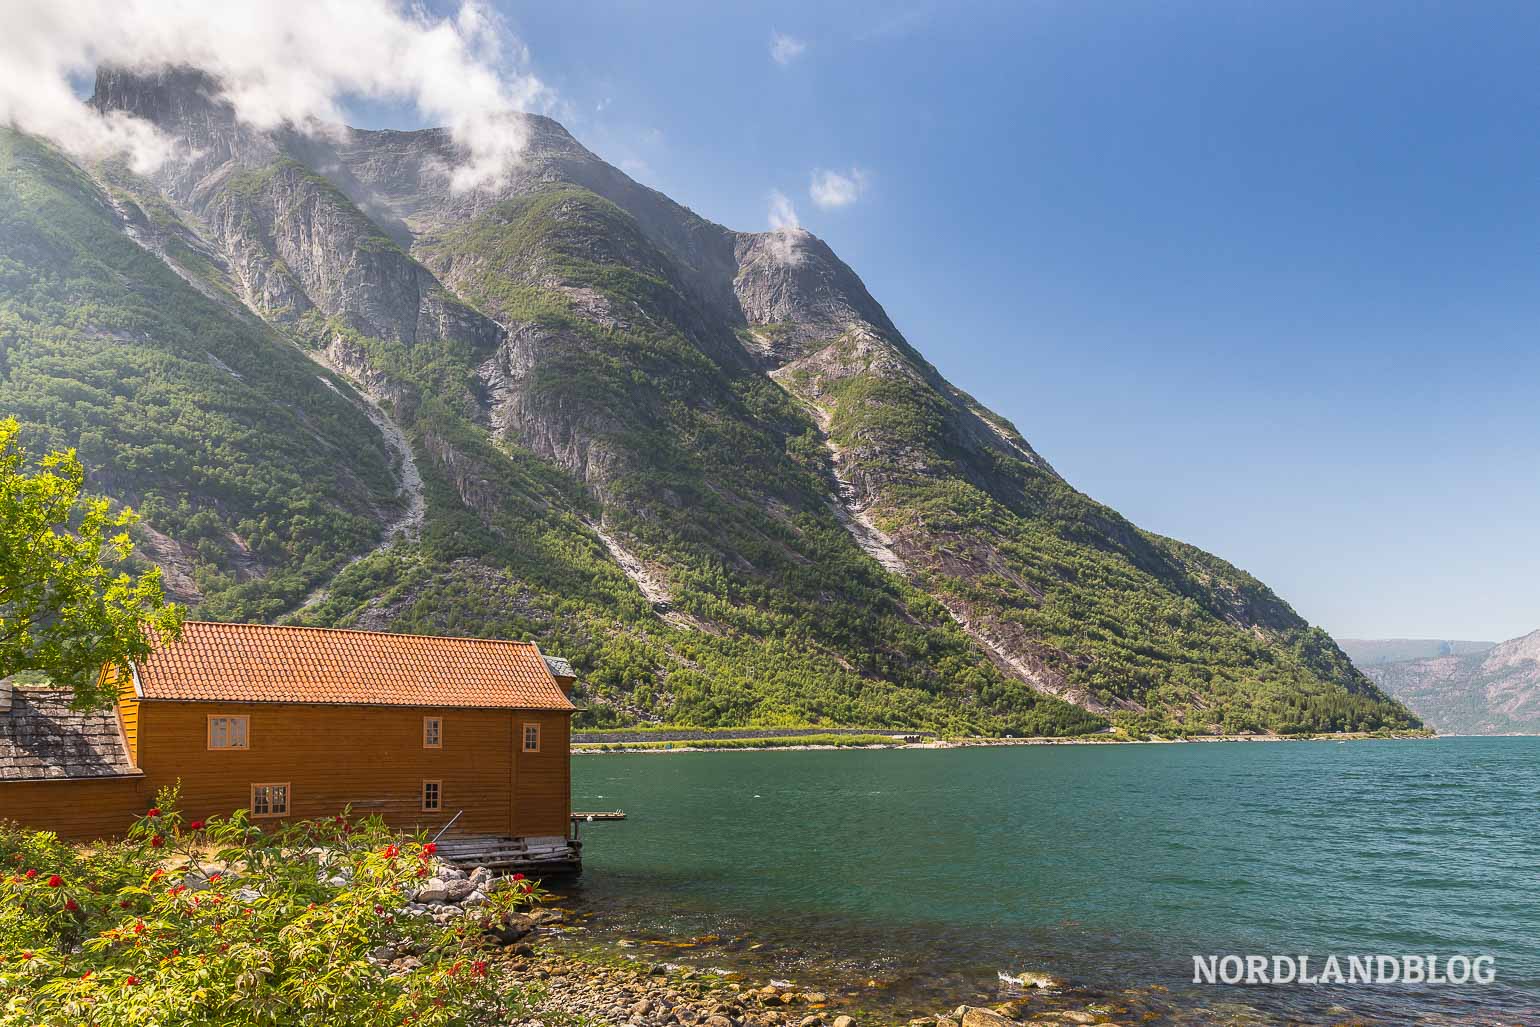 Eidfjord am Hardangerfjord in Norwegen (Nordlandblog) - Reise durch Fjordnorwegen